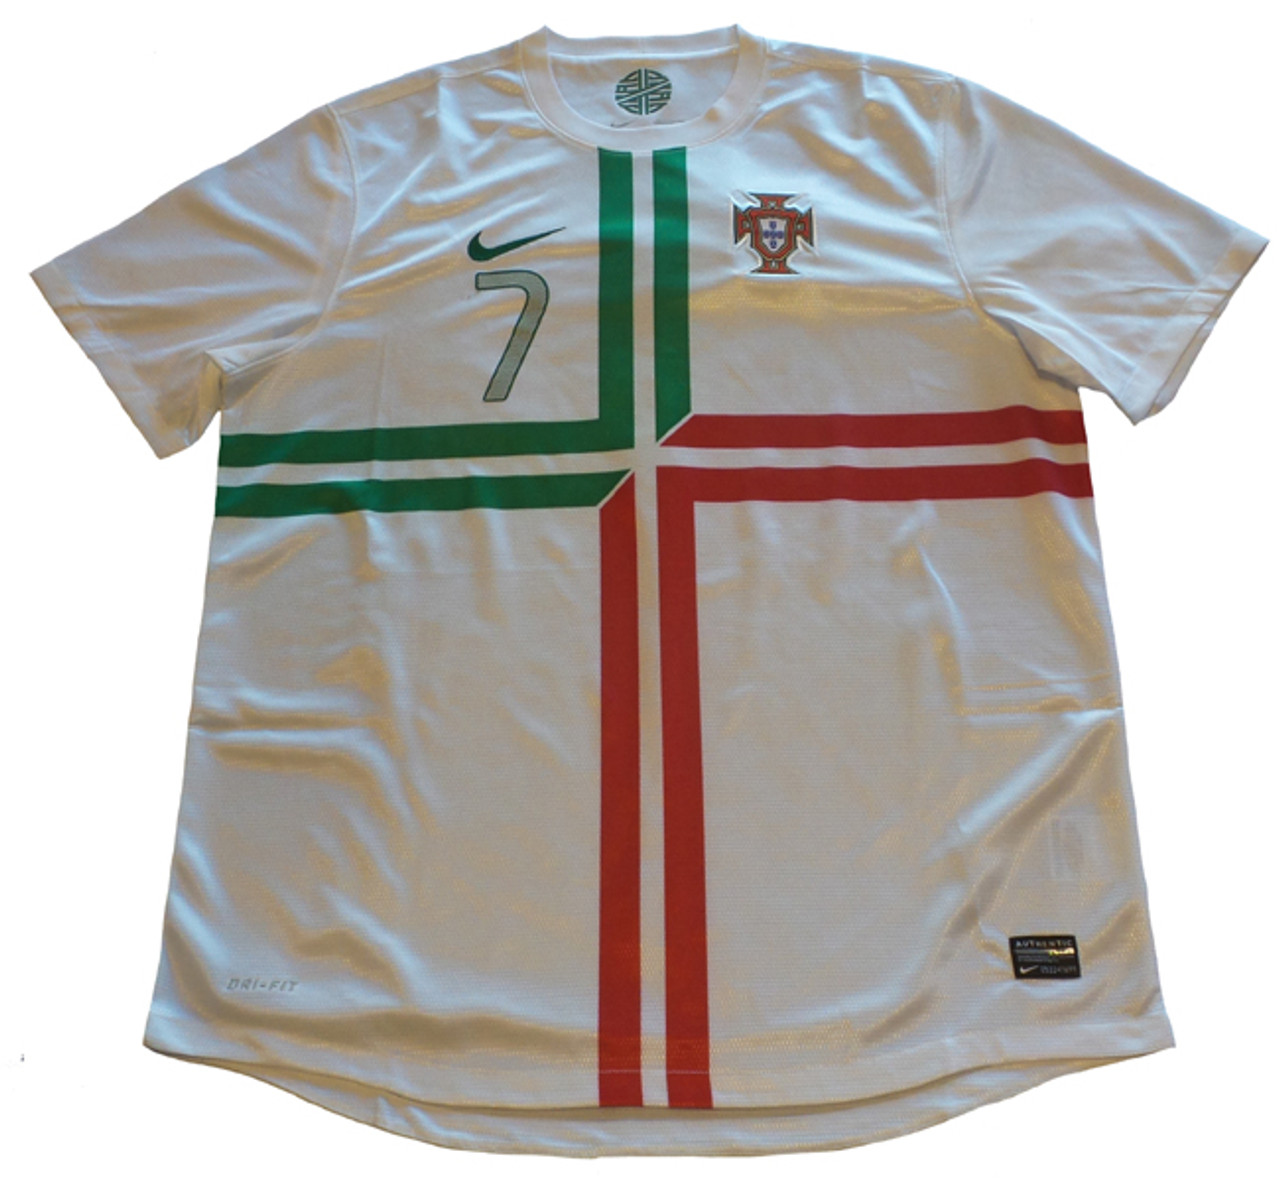 ronaldo portugal jersey white